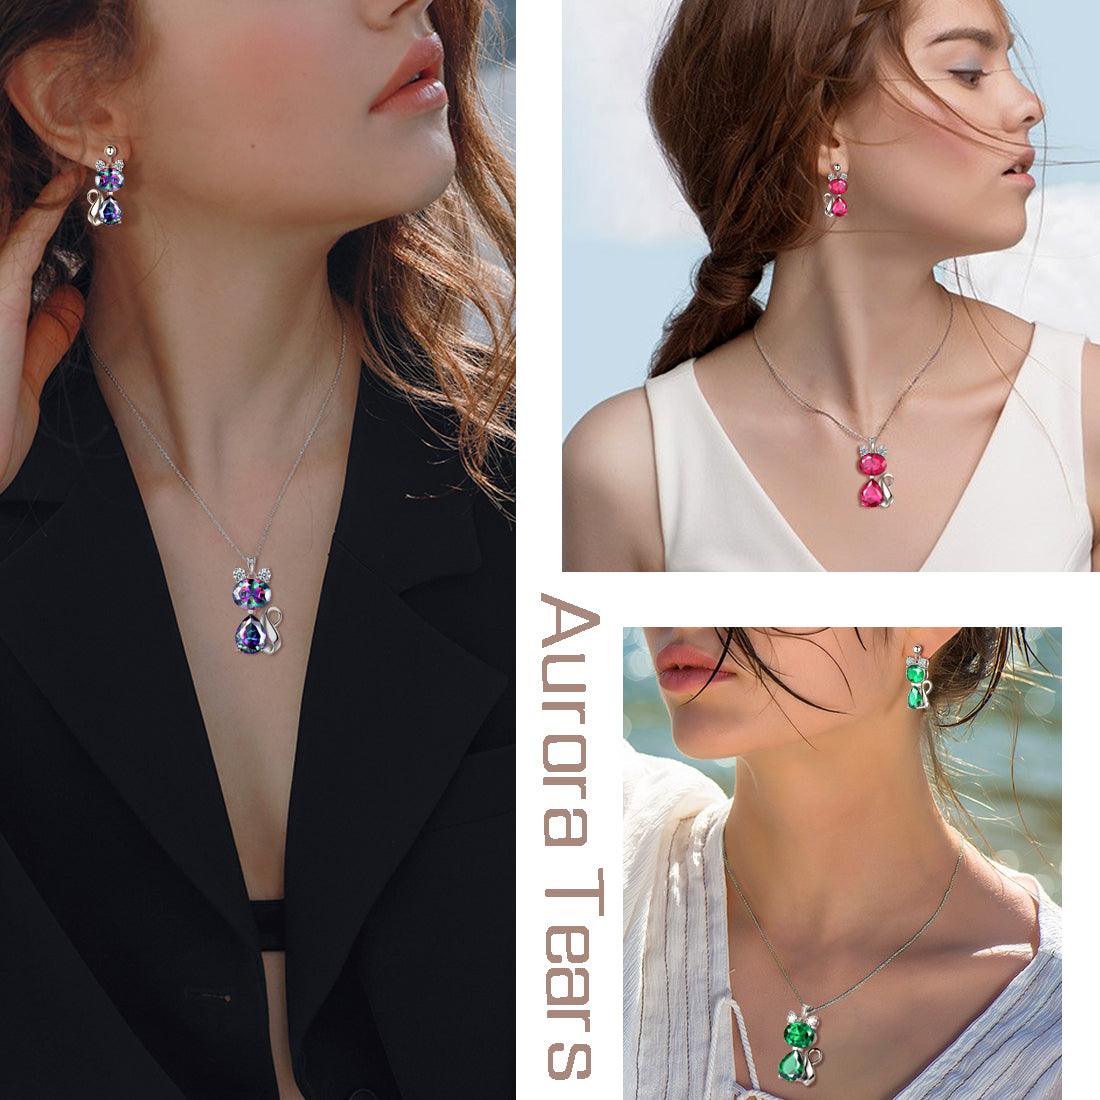 Cat Mystic Rainbow Topaz Necklace Earring Jewelry Set - Jewelry Set - Aurora Tears